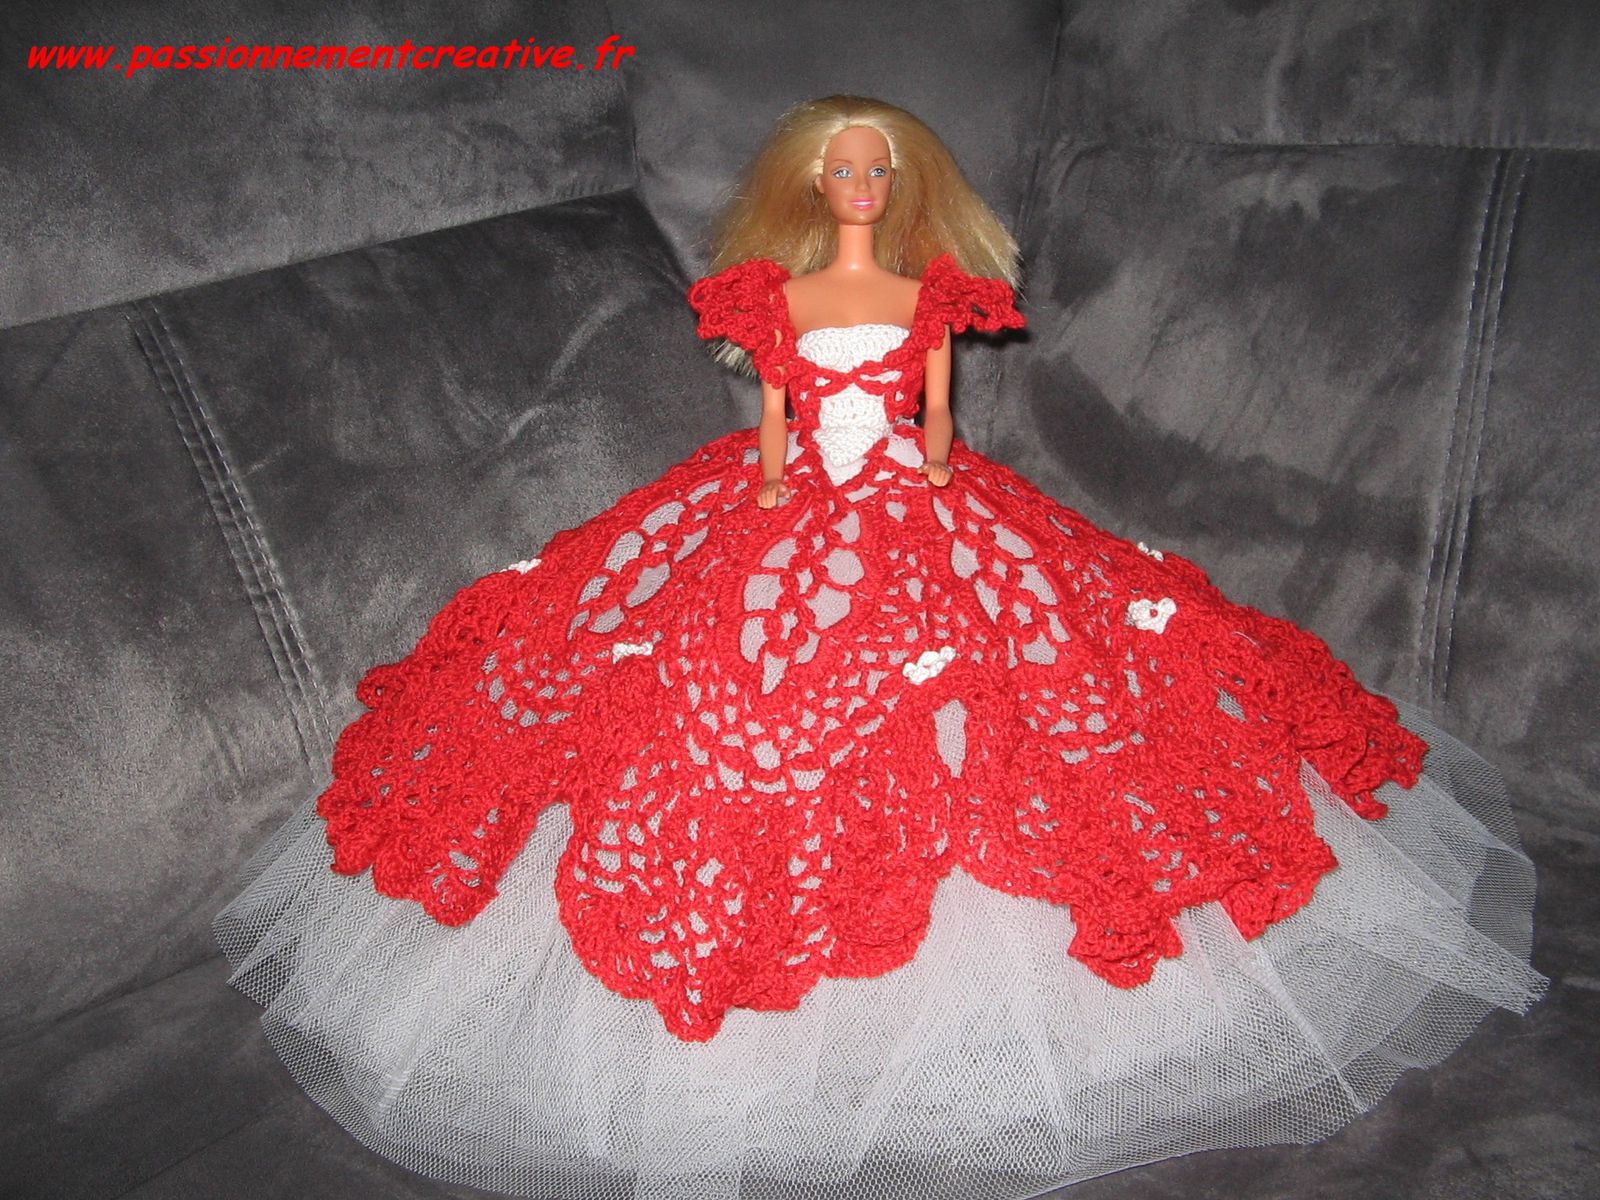 Tutoriel Barbie - Barbie Princesse Rouge 2014 - Passionnement Créative